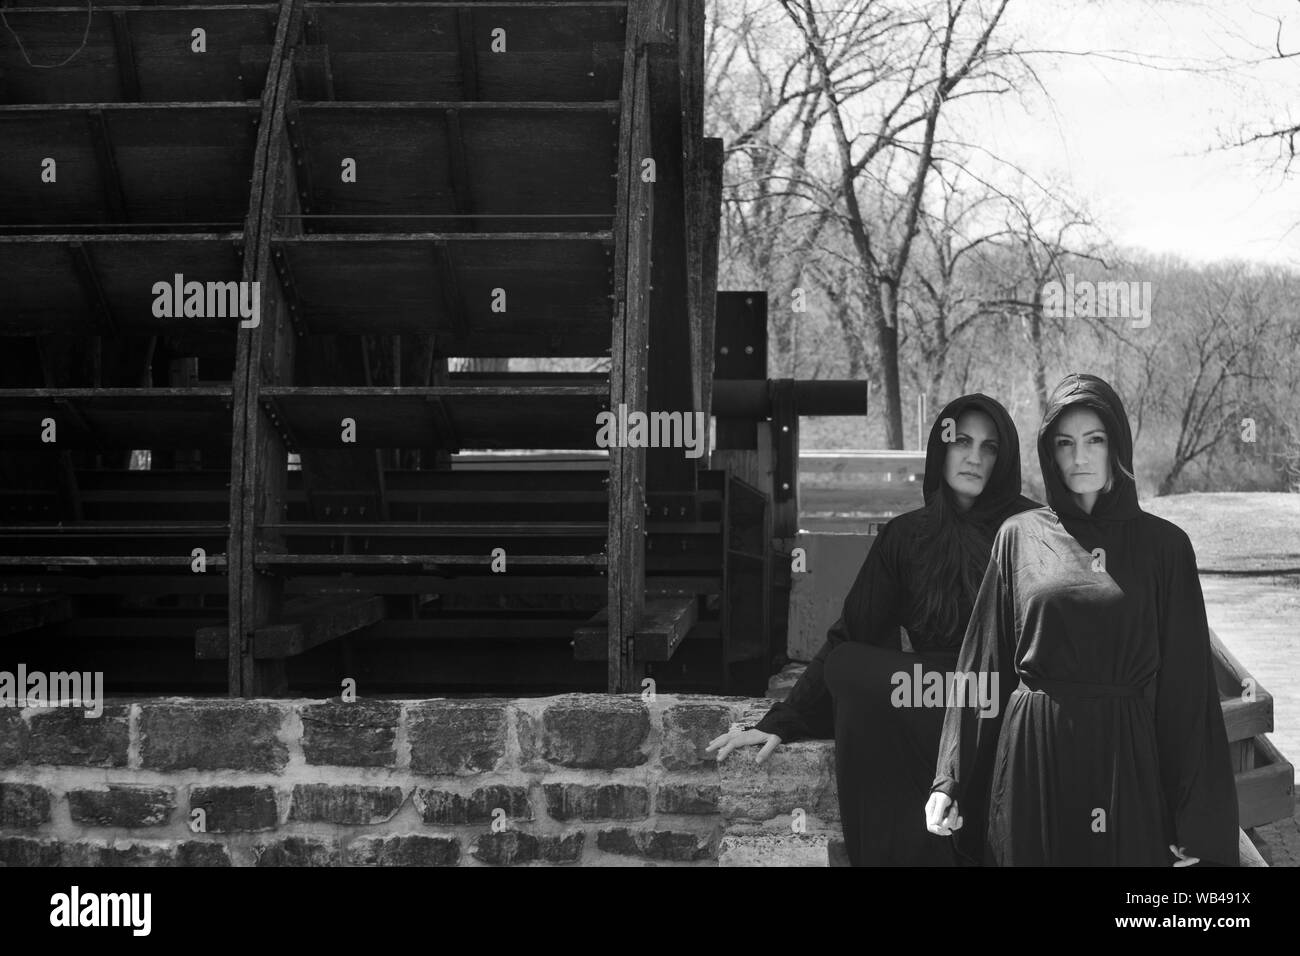 Las mujeres jóvenes con pelo largo oscuro en túnicas negras en frente de un antiguo molino de agua de madera. Las Brujas. Concepto de Halloween. La brujería y la magia. Foto de stock